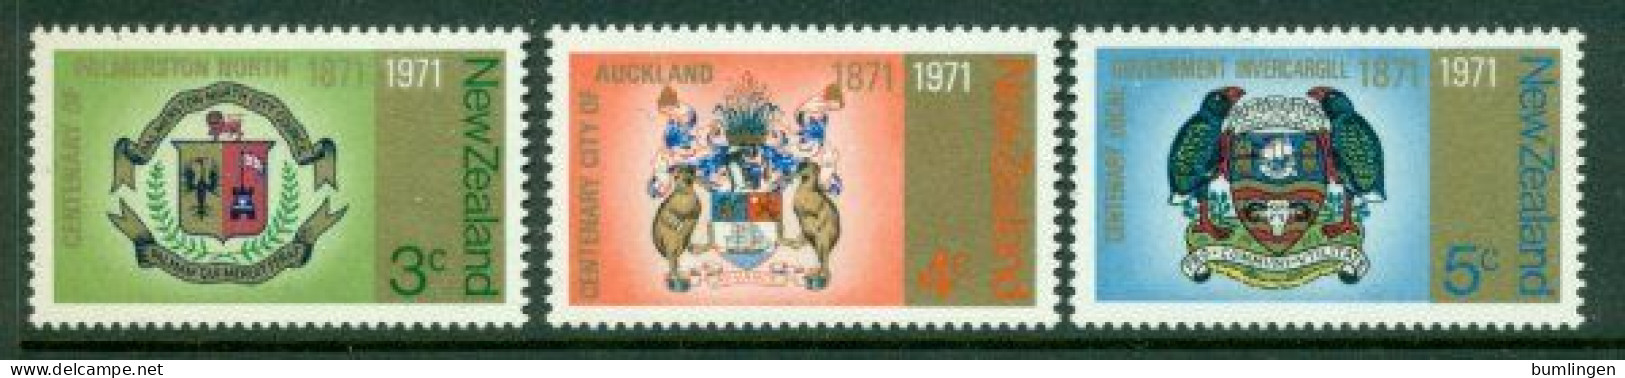 NEW ZEALAND 1971 Mi 554-56** City Coat Of Arms [B874] - Postzegels